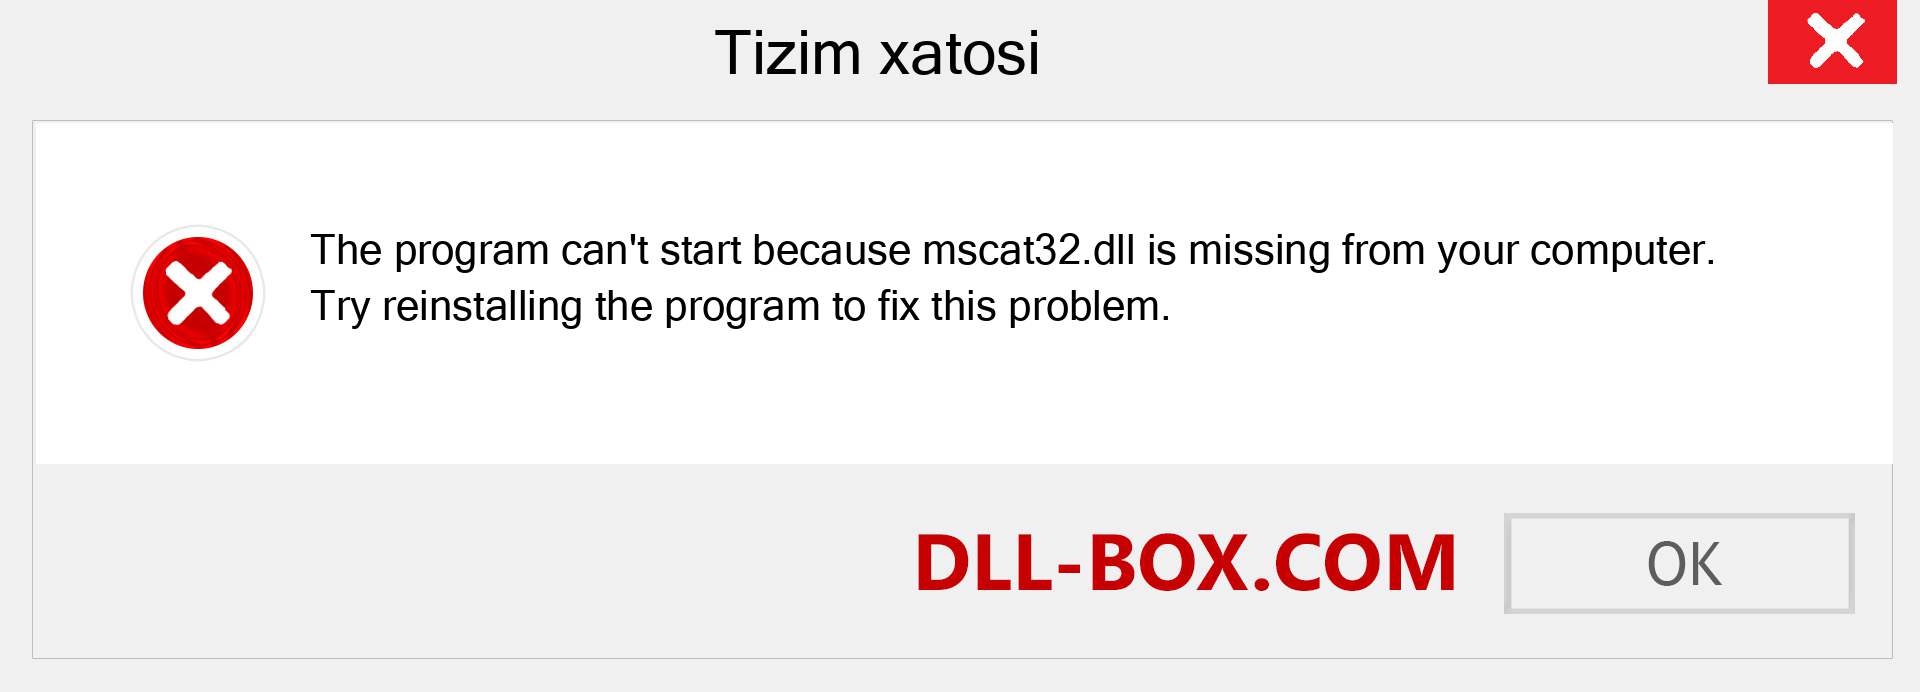 mscat32.dll fayli yo'qolganmi?. Windows 7, 8, 10 uchun yuklab olish - Windowsda mscat32 dll etishmayotgan xatoni tuzating, rasmlar, rasmlar